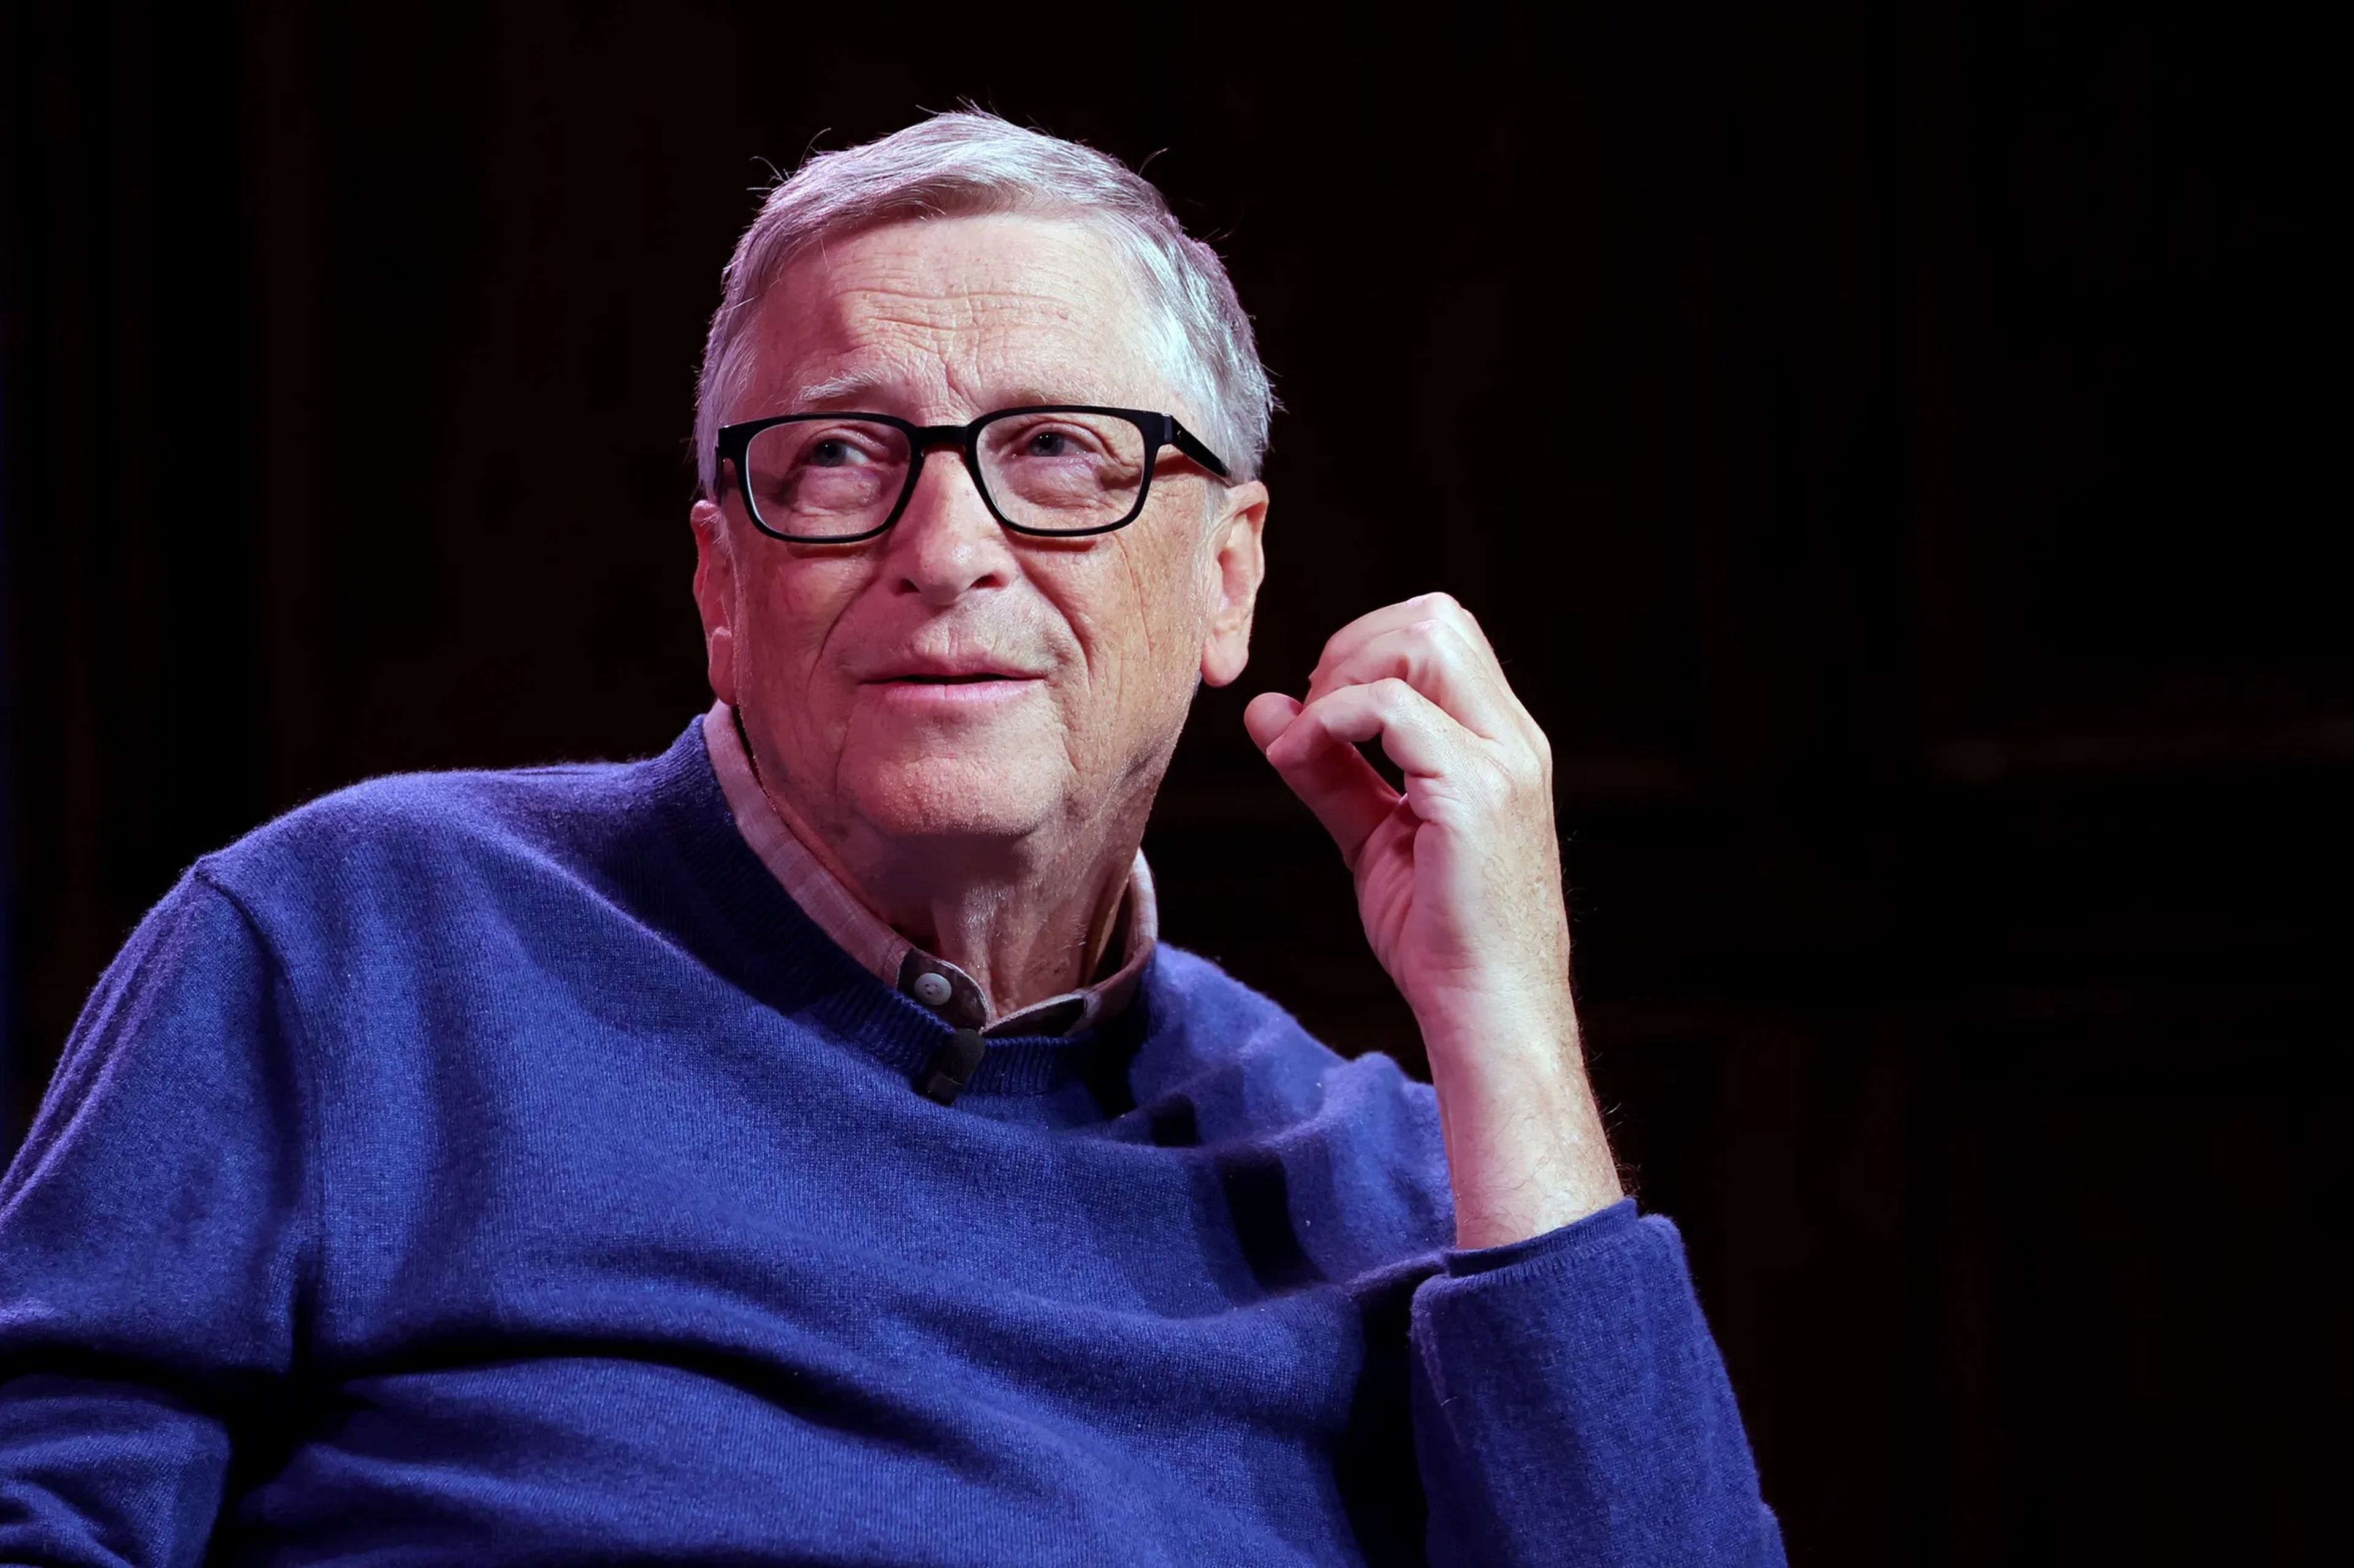 Bill Gates respondió a preguntas relacionadas con el clima, el futuro y su multimillonaria fortuna durante una sesión de Reddit de "pregúntame lo que quieras" el 11 de enero de 2023.